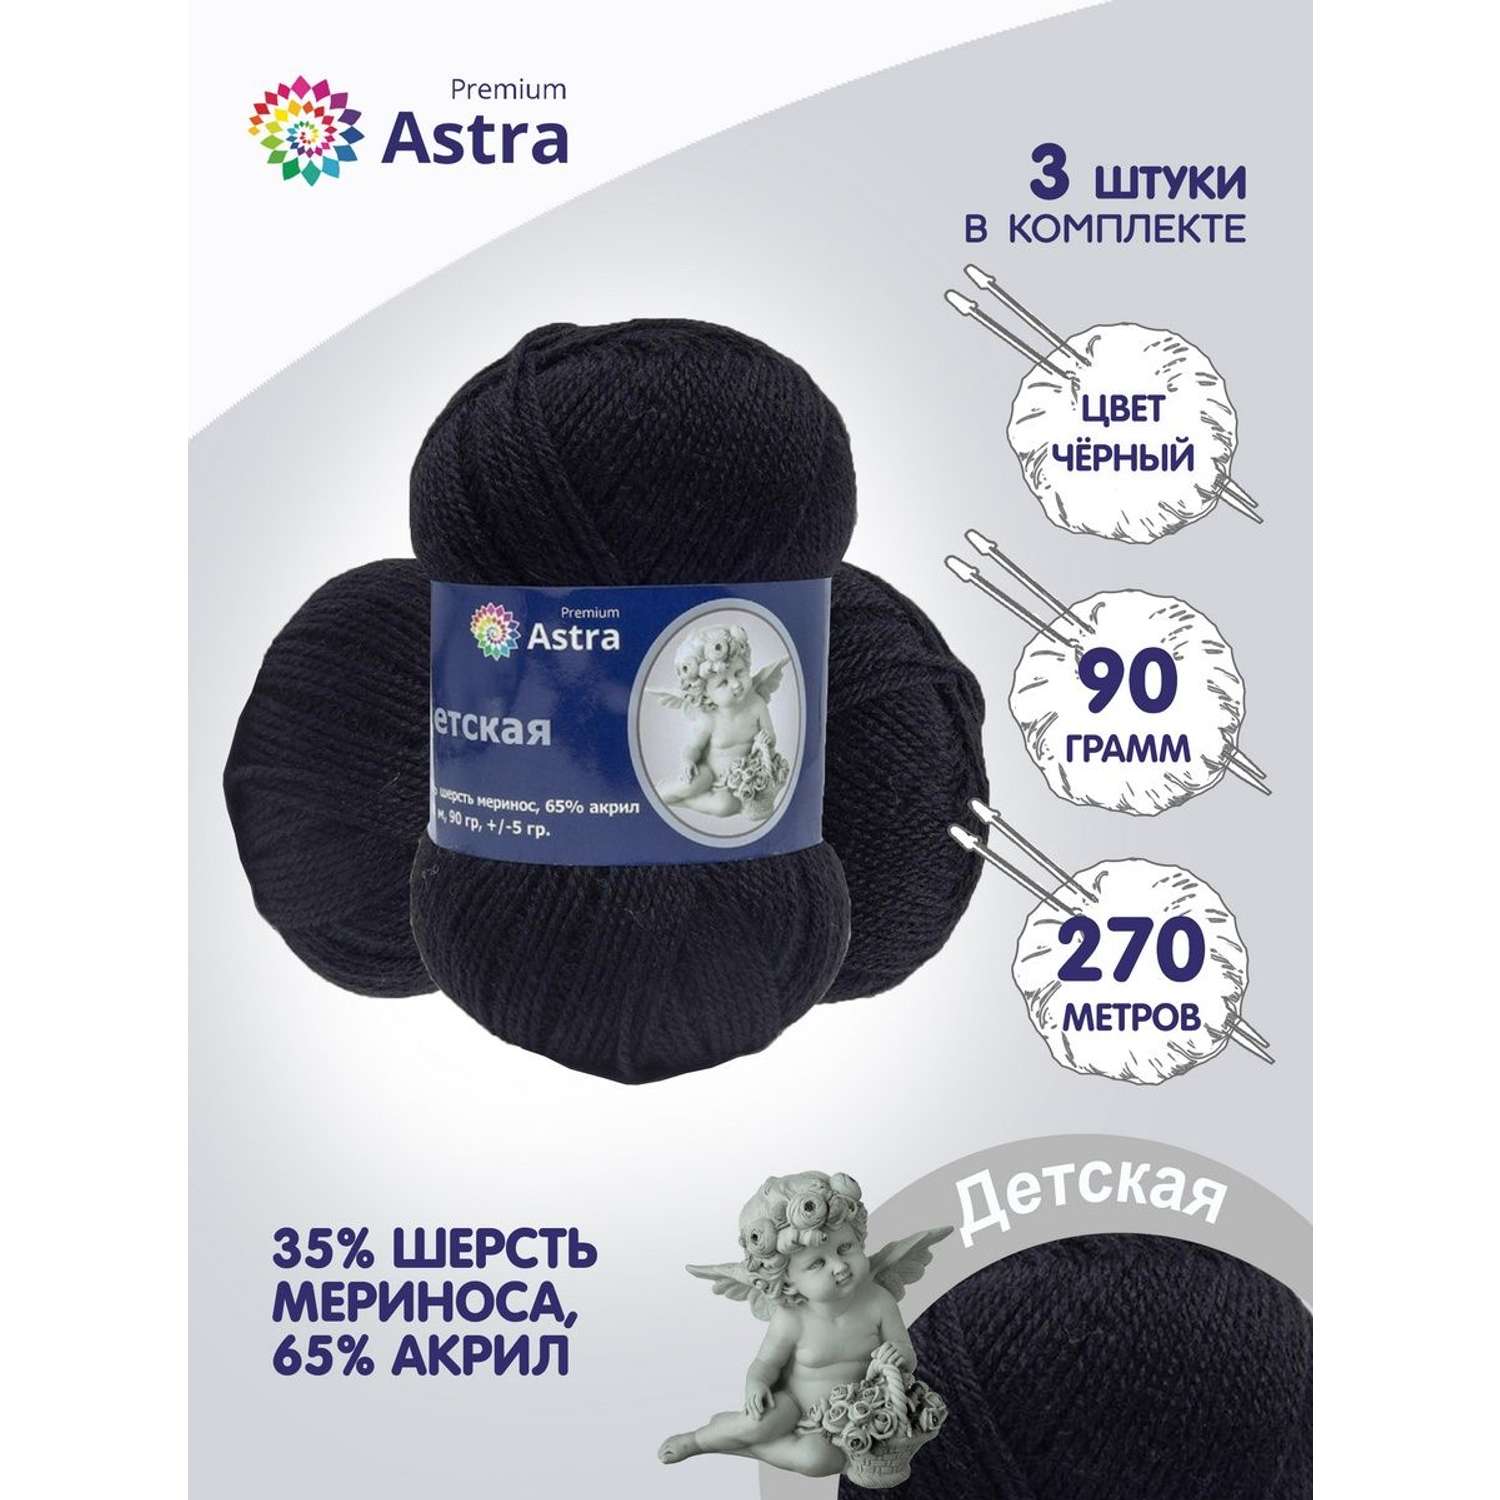 Пряжа для вязания Astra Premium детская из акрила и шерсти для детских вещей 90 гр 270 м черный 3 мотка - фото 1